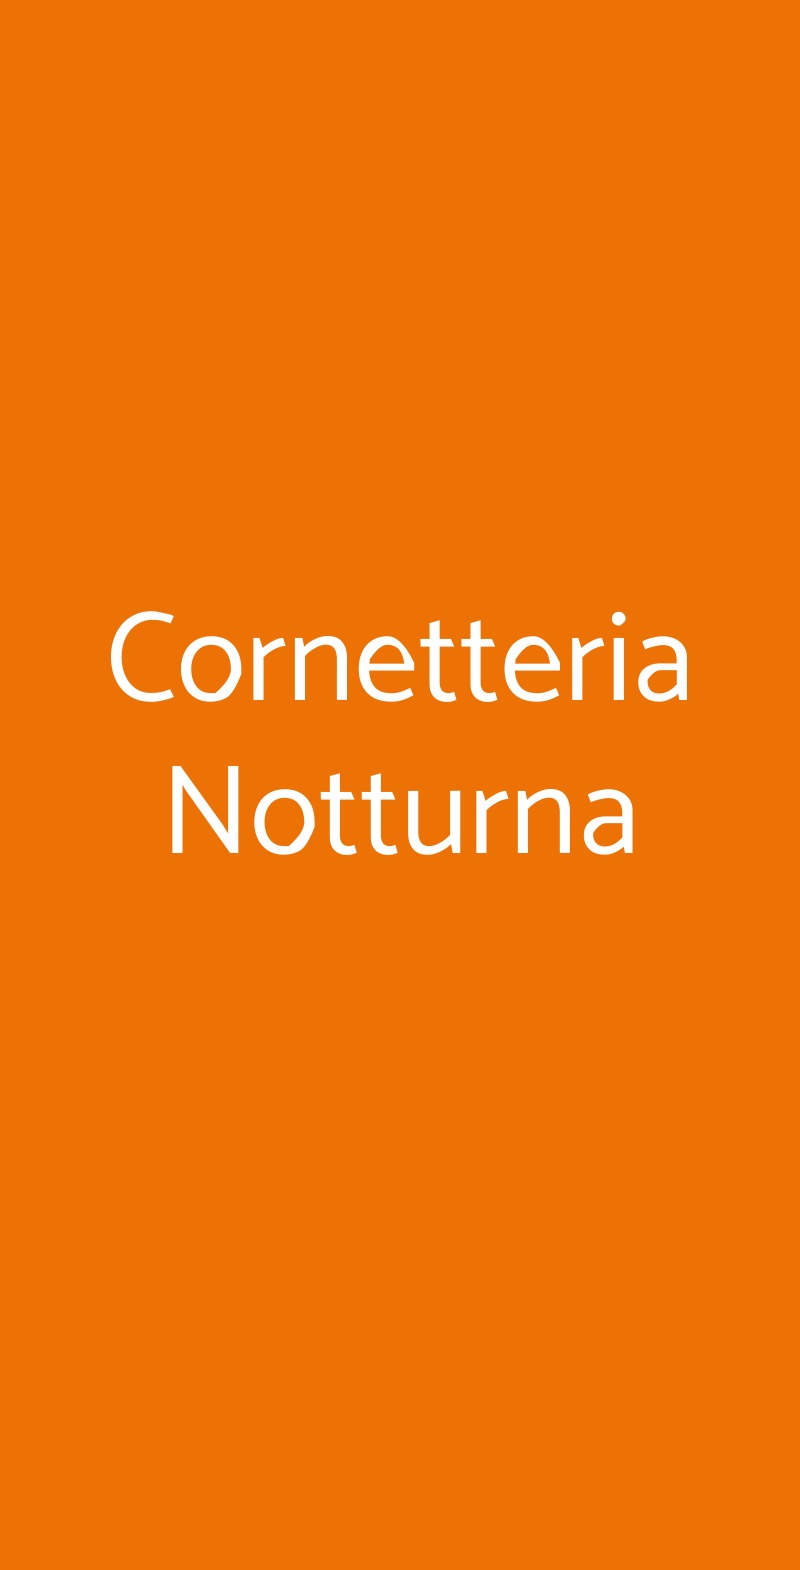 Cornetteria Notturna Firenze menù 1 pagina